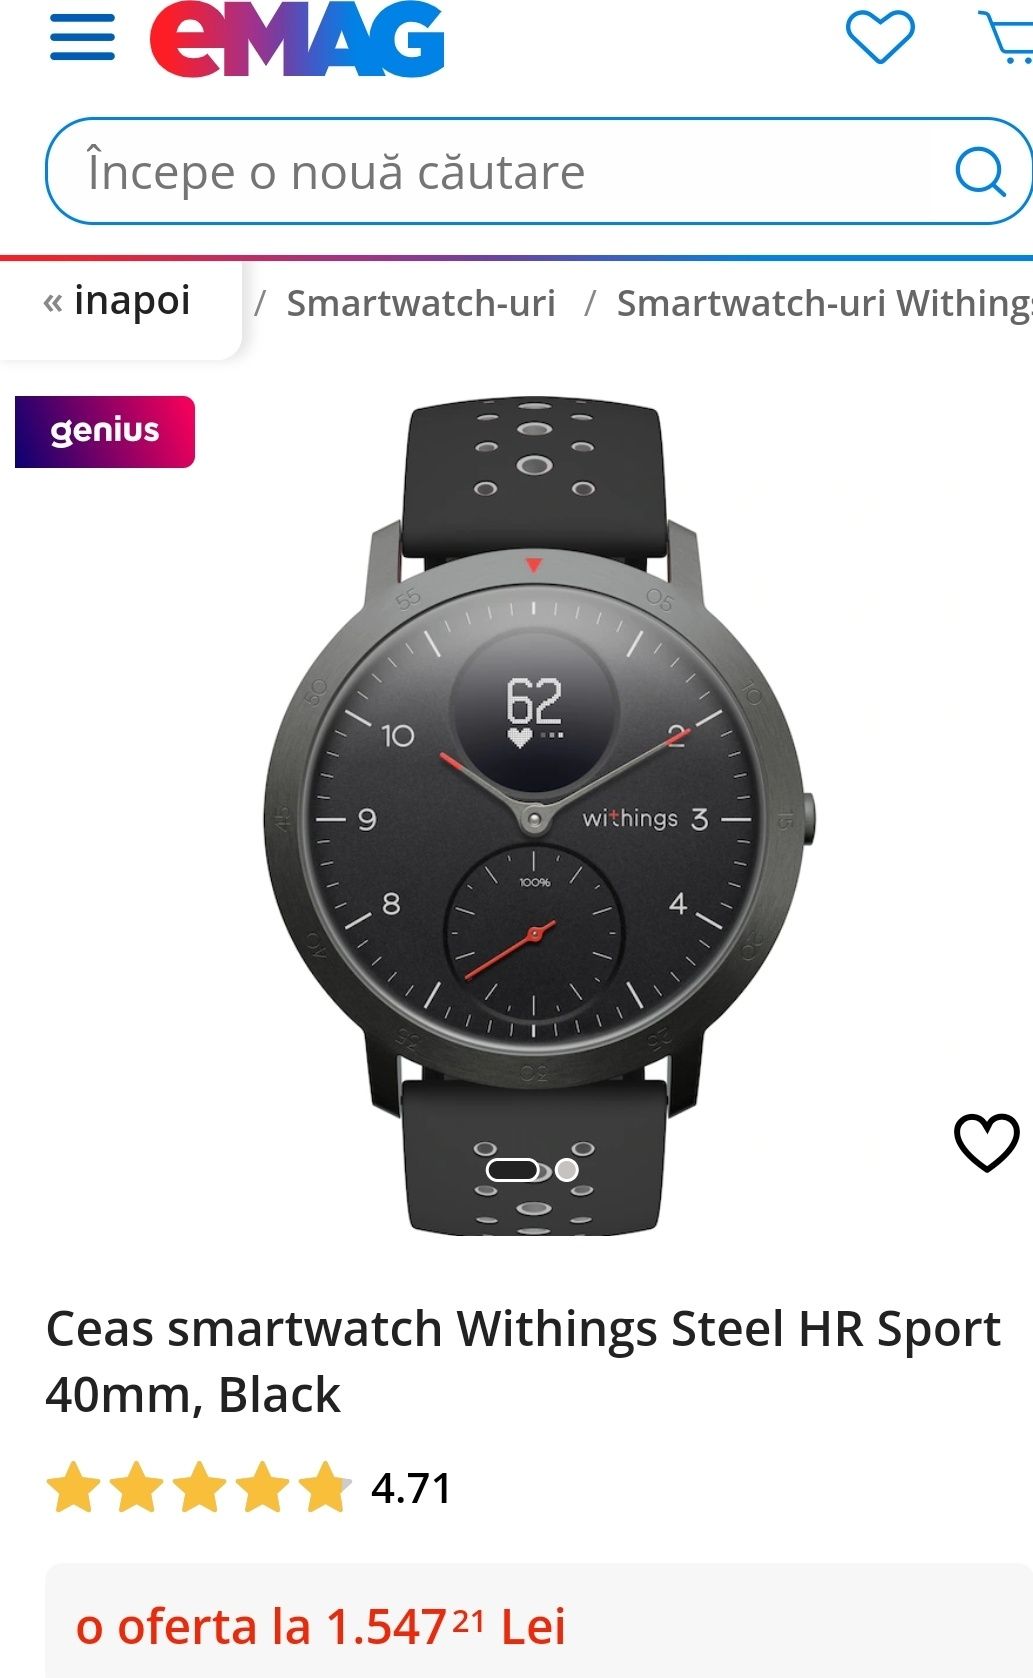 Ceas smartwatch Withings Steel HR Sport 40mm, Black